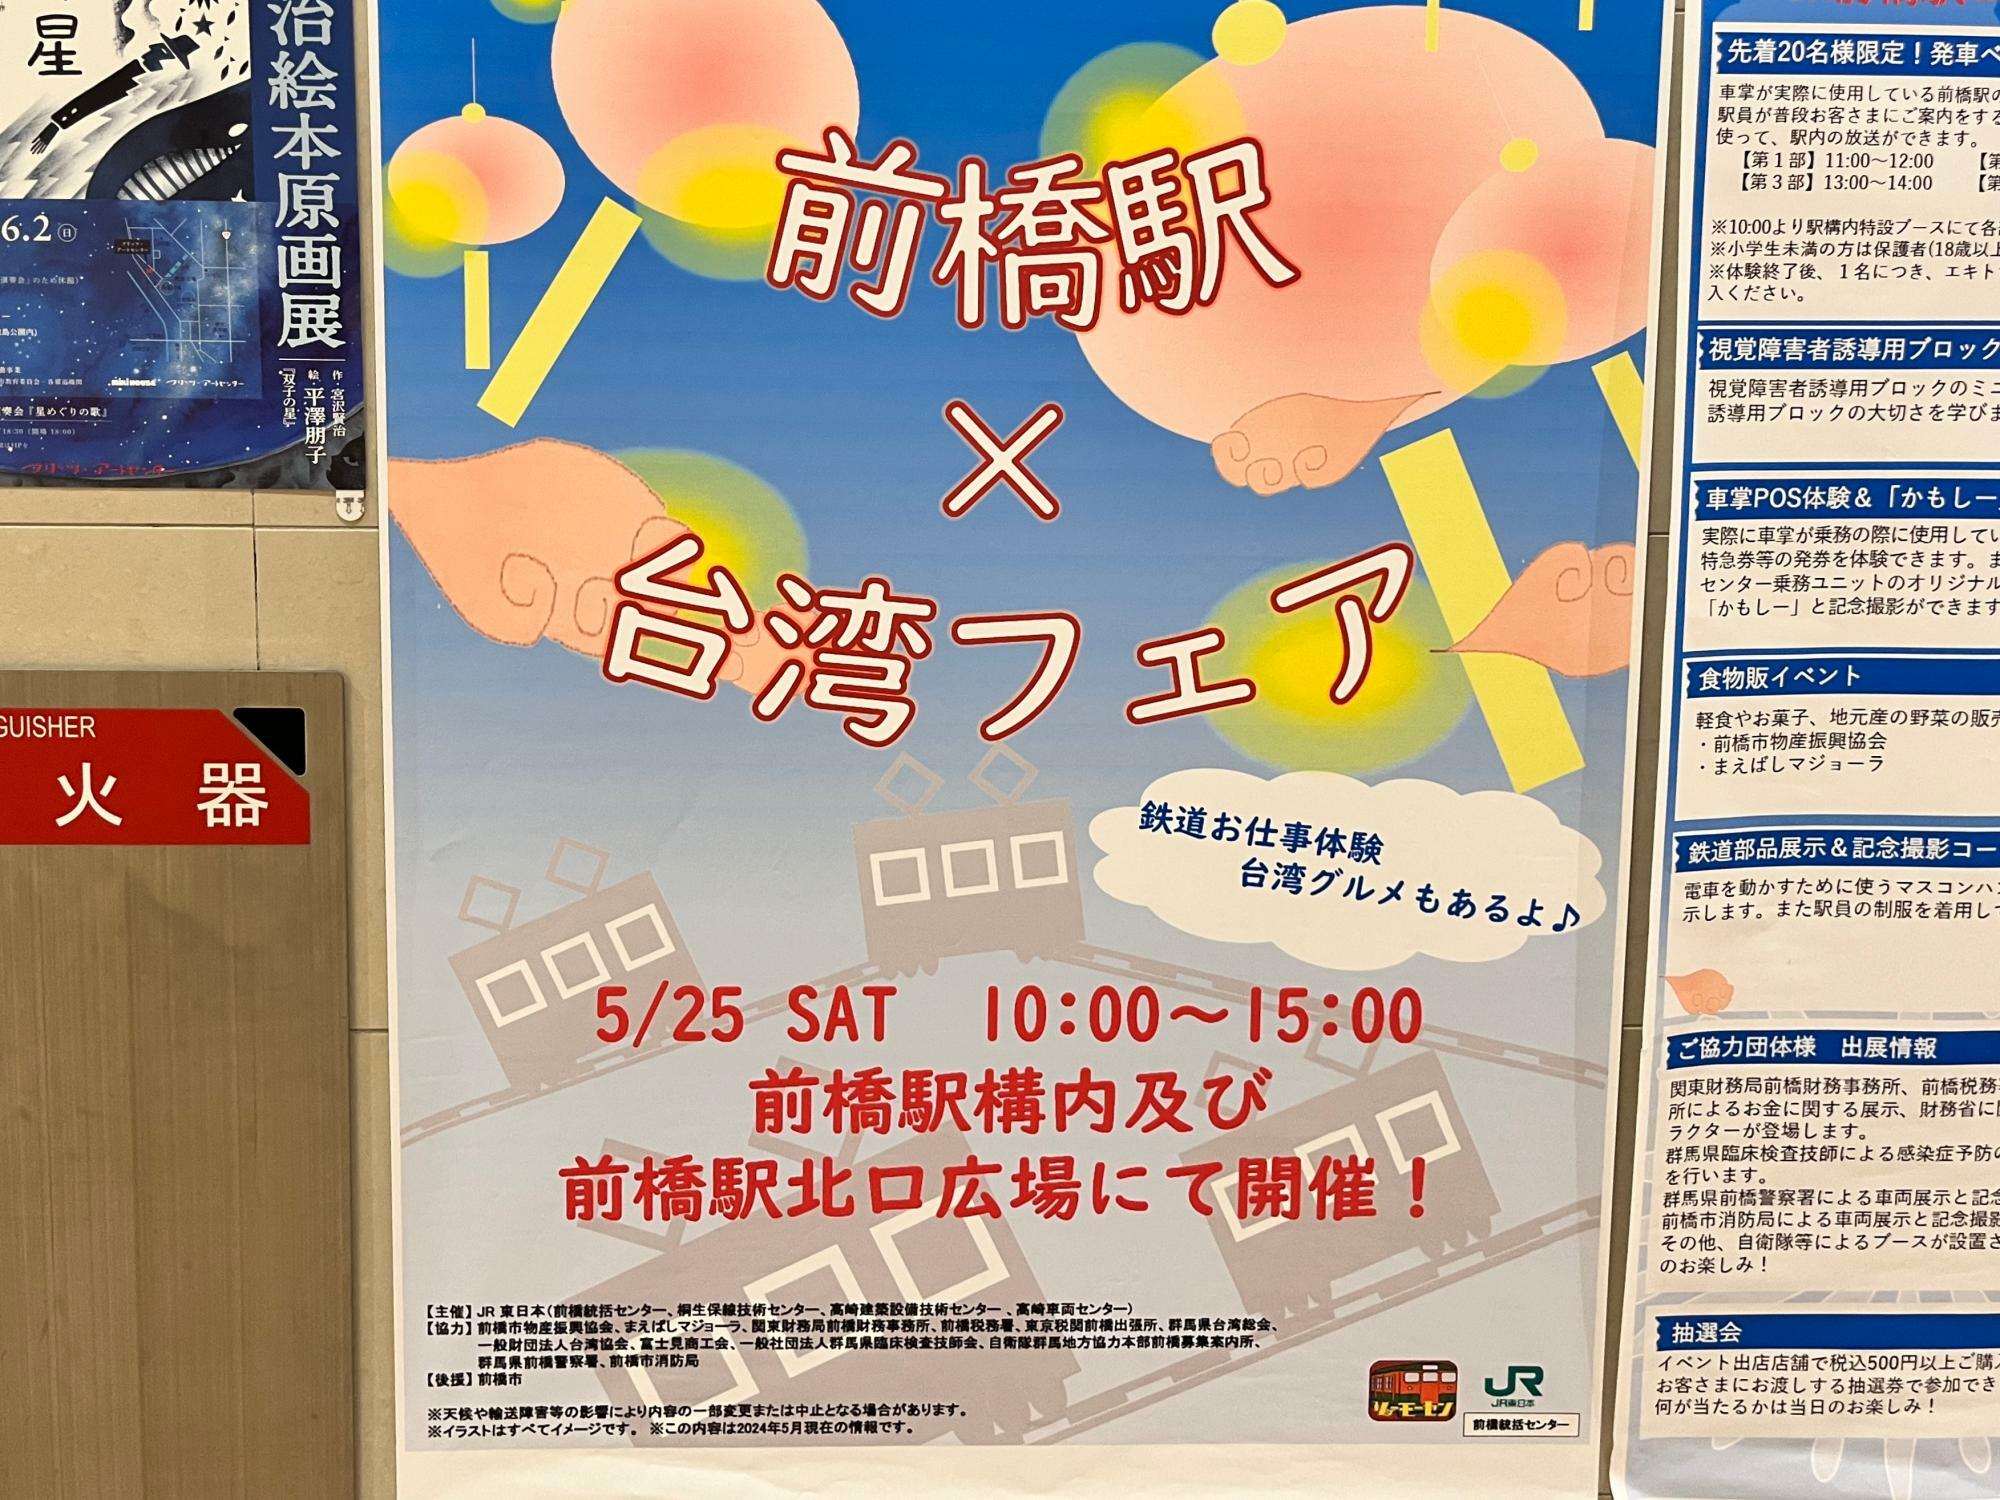 「前橋駅×台湾フェア」開催告知のポスター